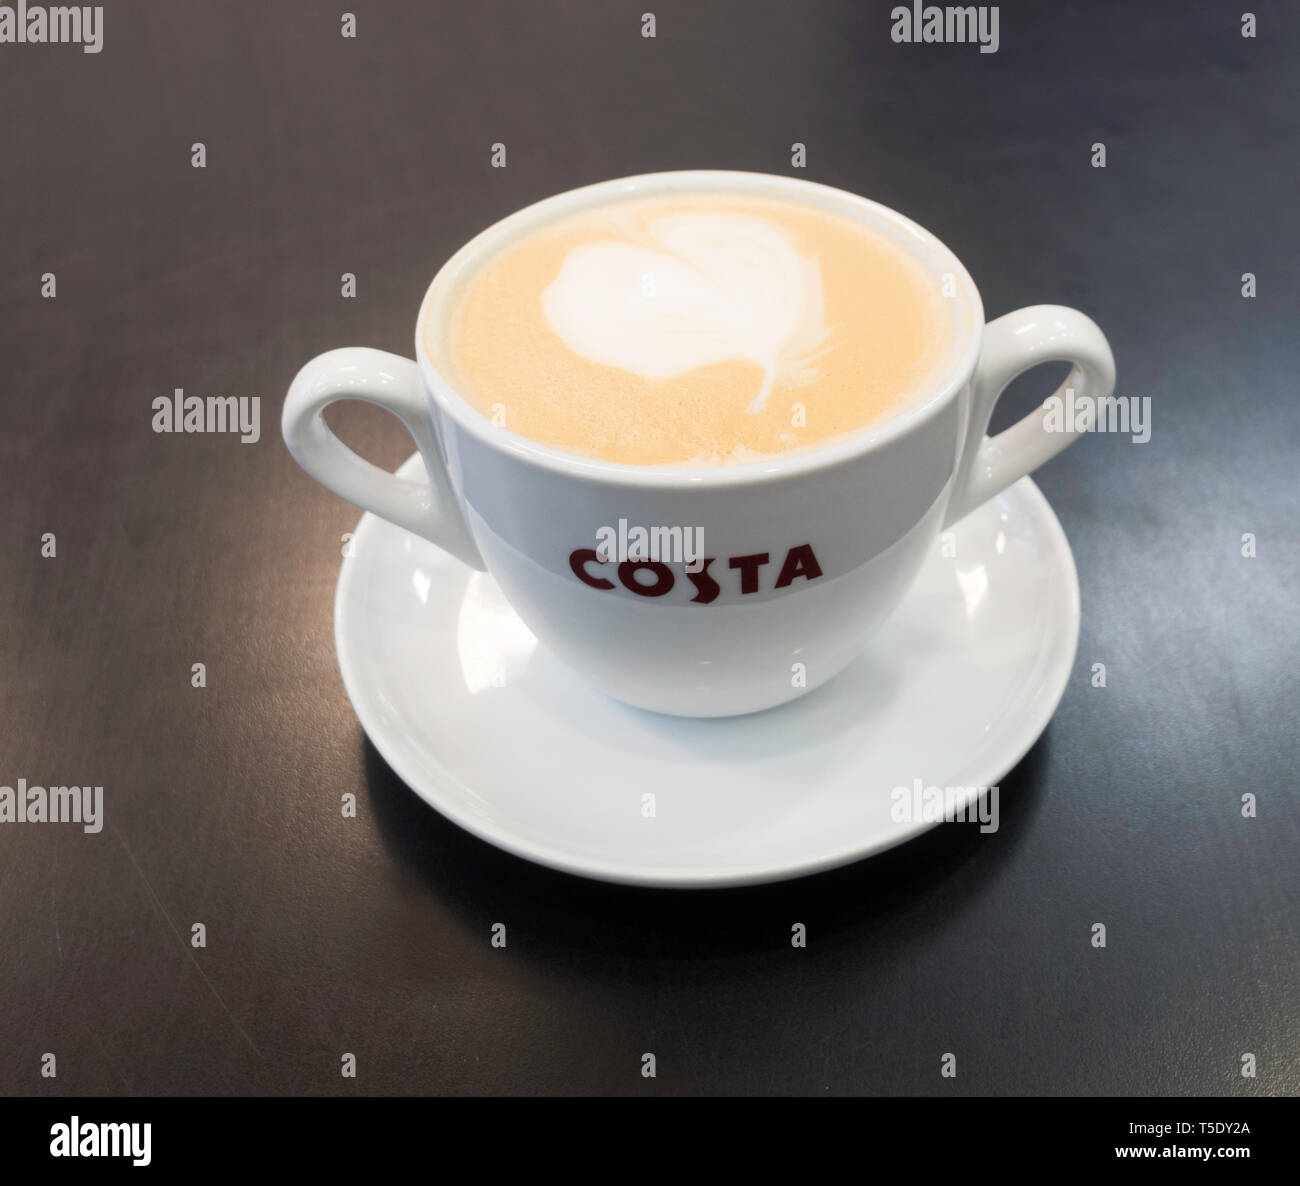 Una gran taza de doble mango Costa latte café, Inglaterra, Reino Unido. Foto de stock